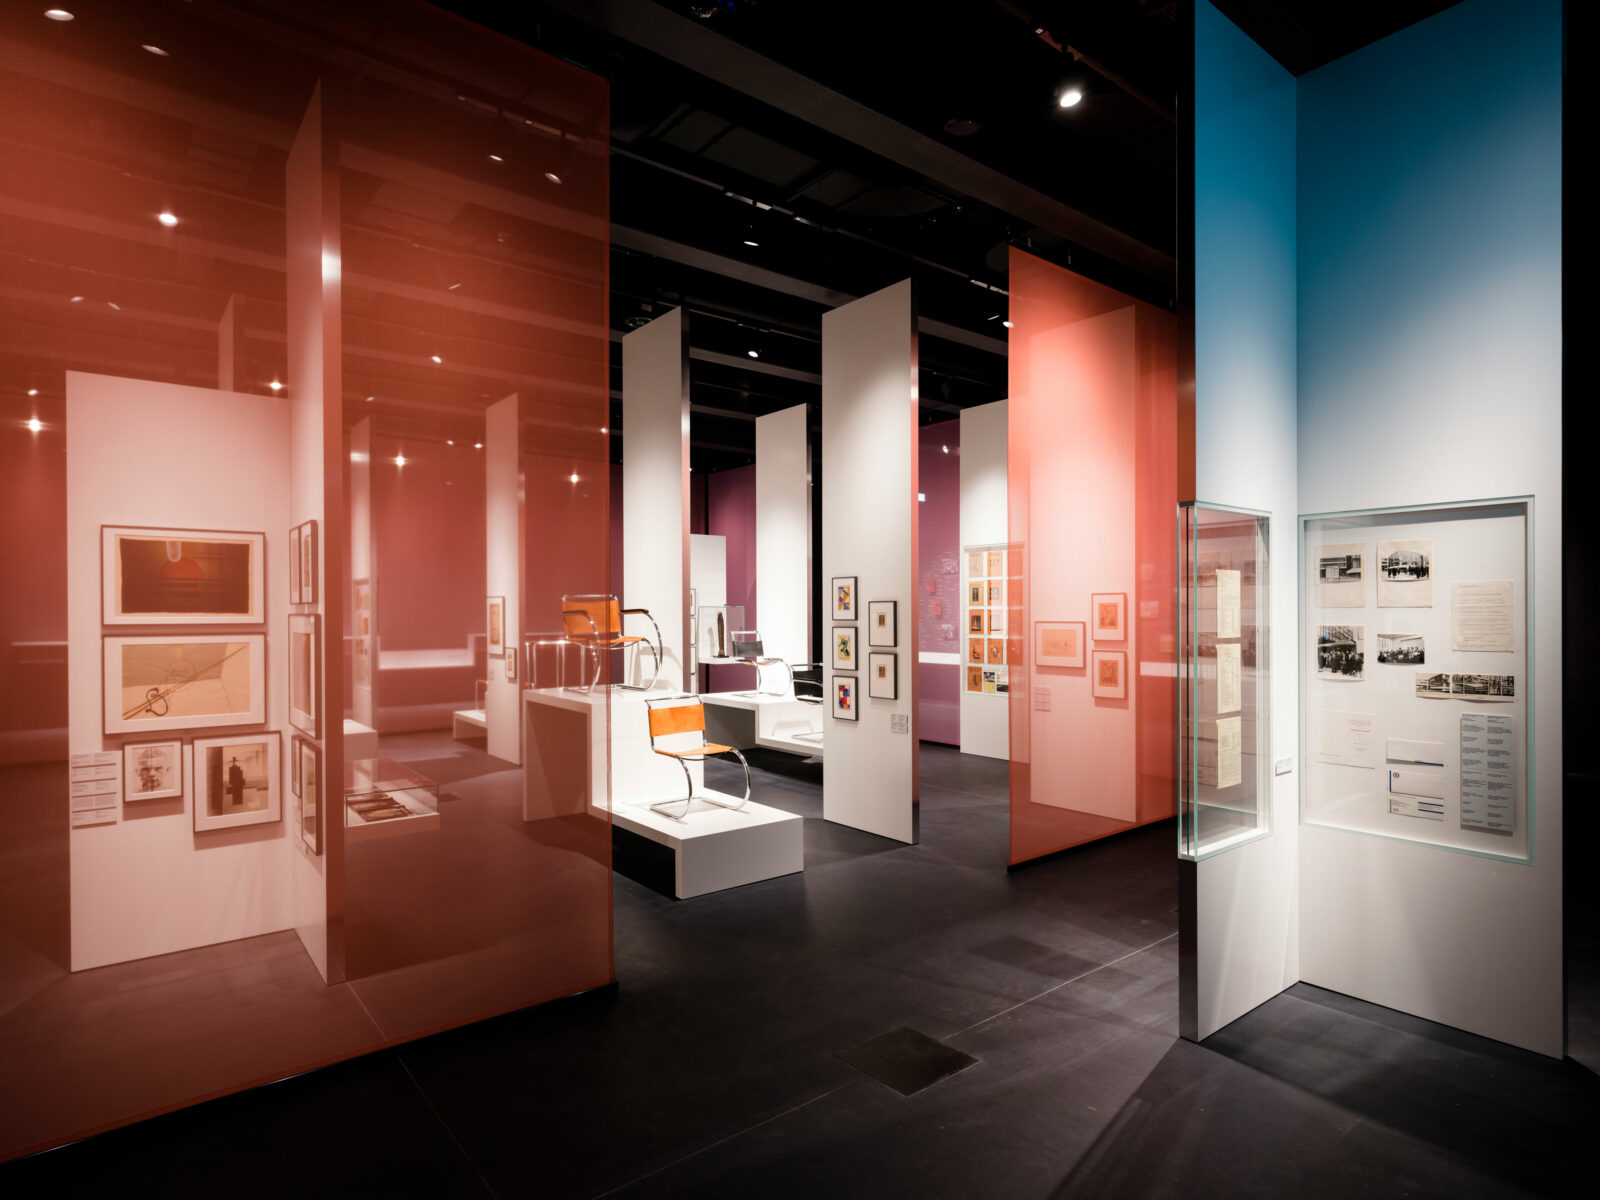 Halbtransparente Farbwände begrenzen die Ausstellungssituation im Bauhaus Museum Dessau.